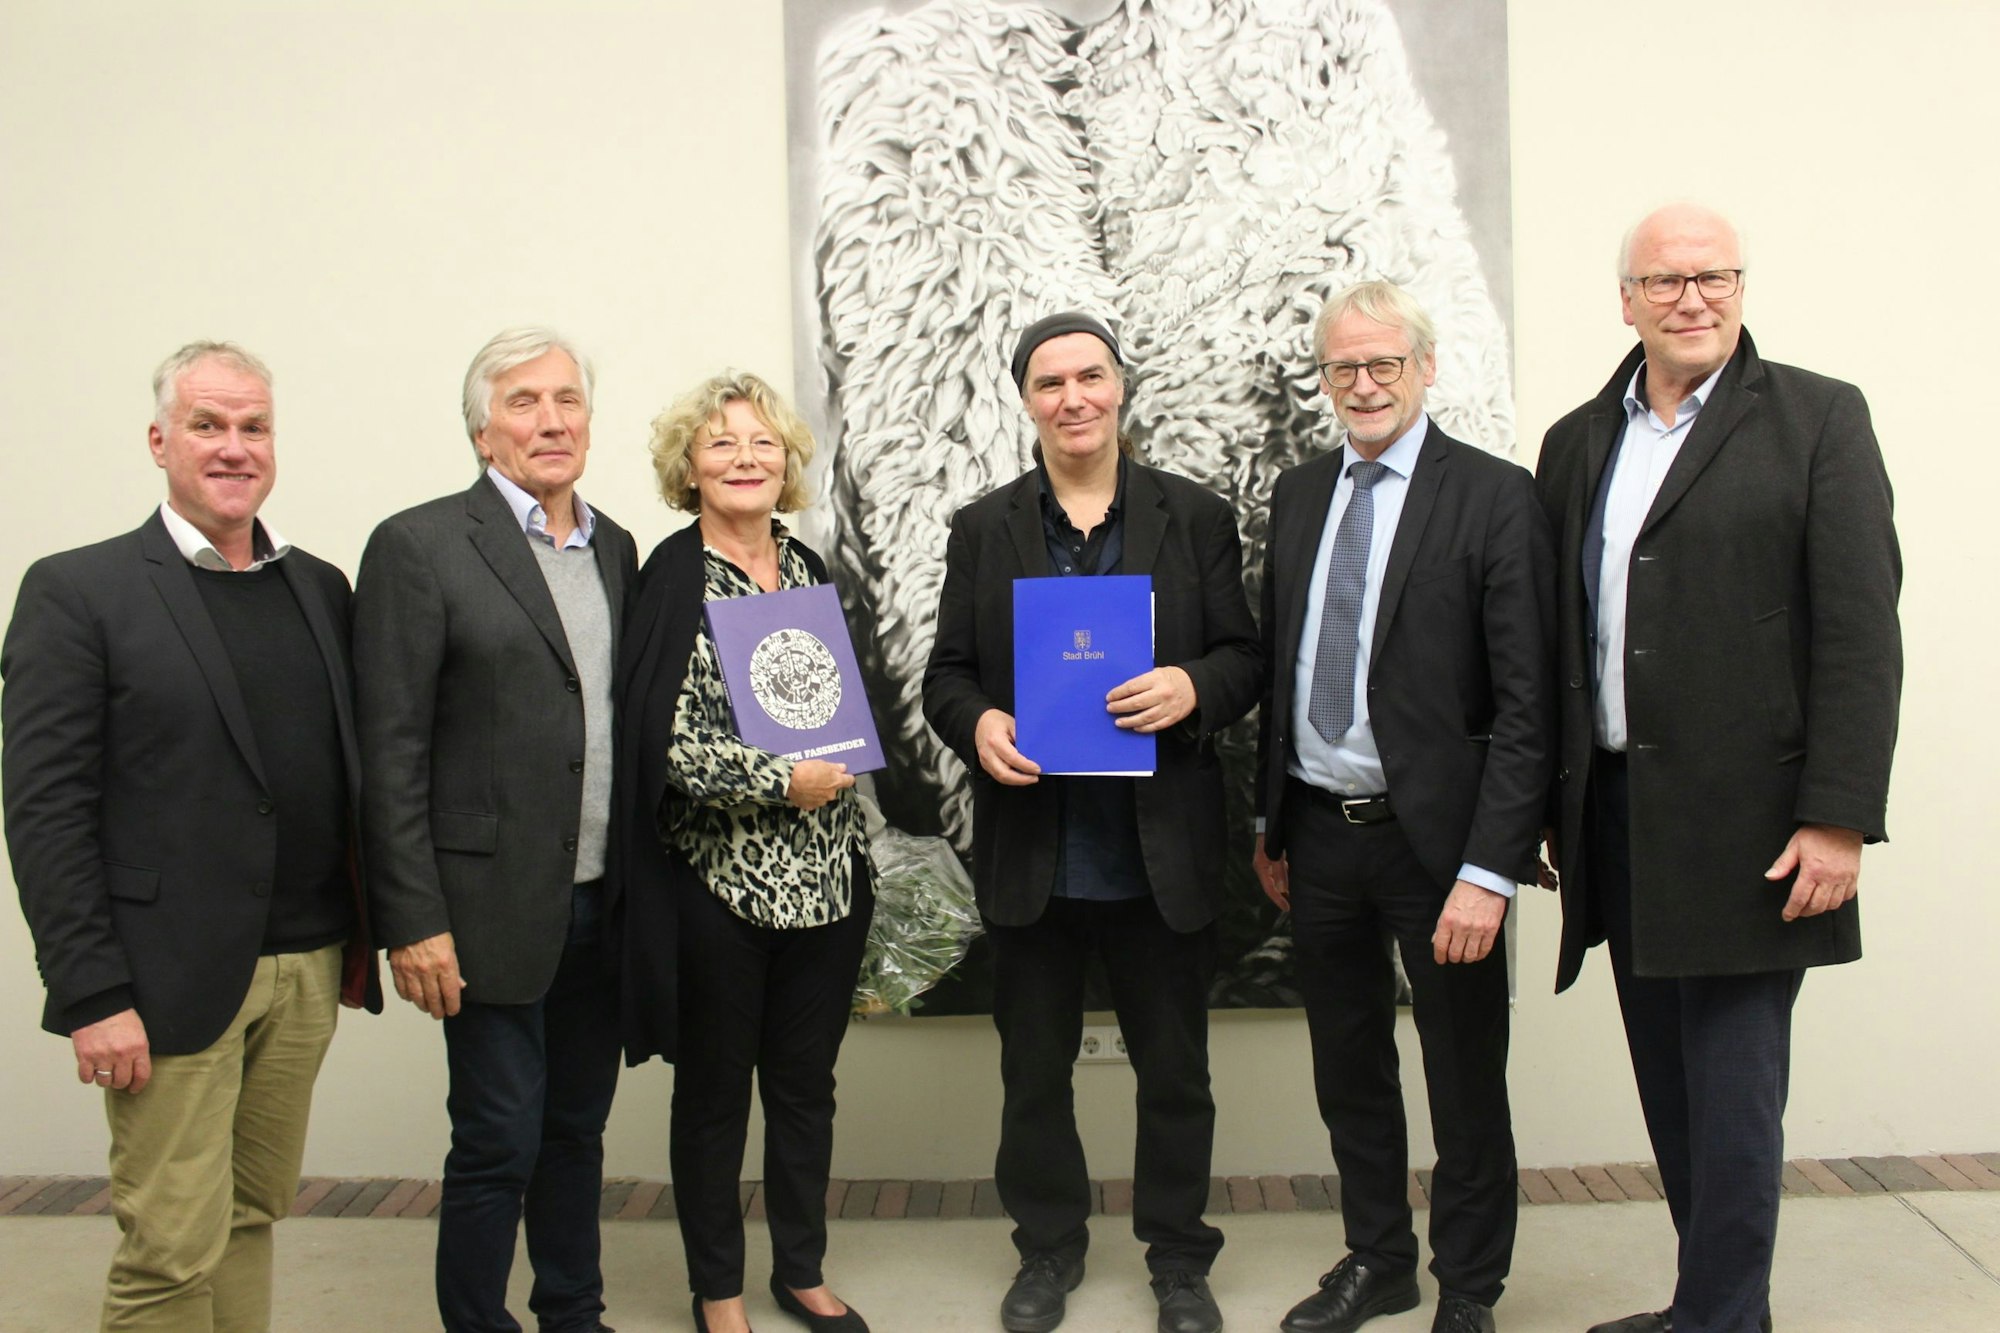 Martin Steffens, das Ehepaar Piert-Borgers als Stifter des Preises, Bürgermeister Dieter Freytag und Jury-Mitglied Achim Sommer haben den Künstler in die Mitte genommen und gratulieren ihm.